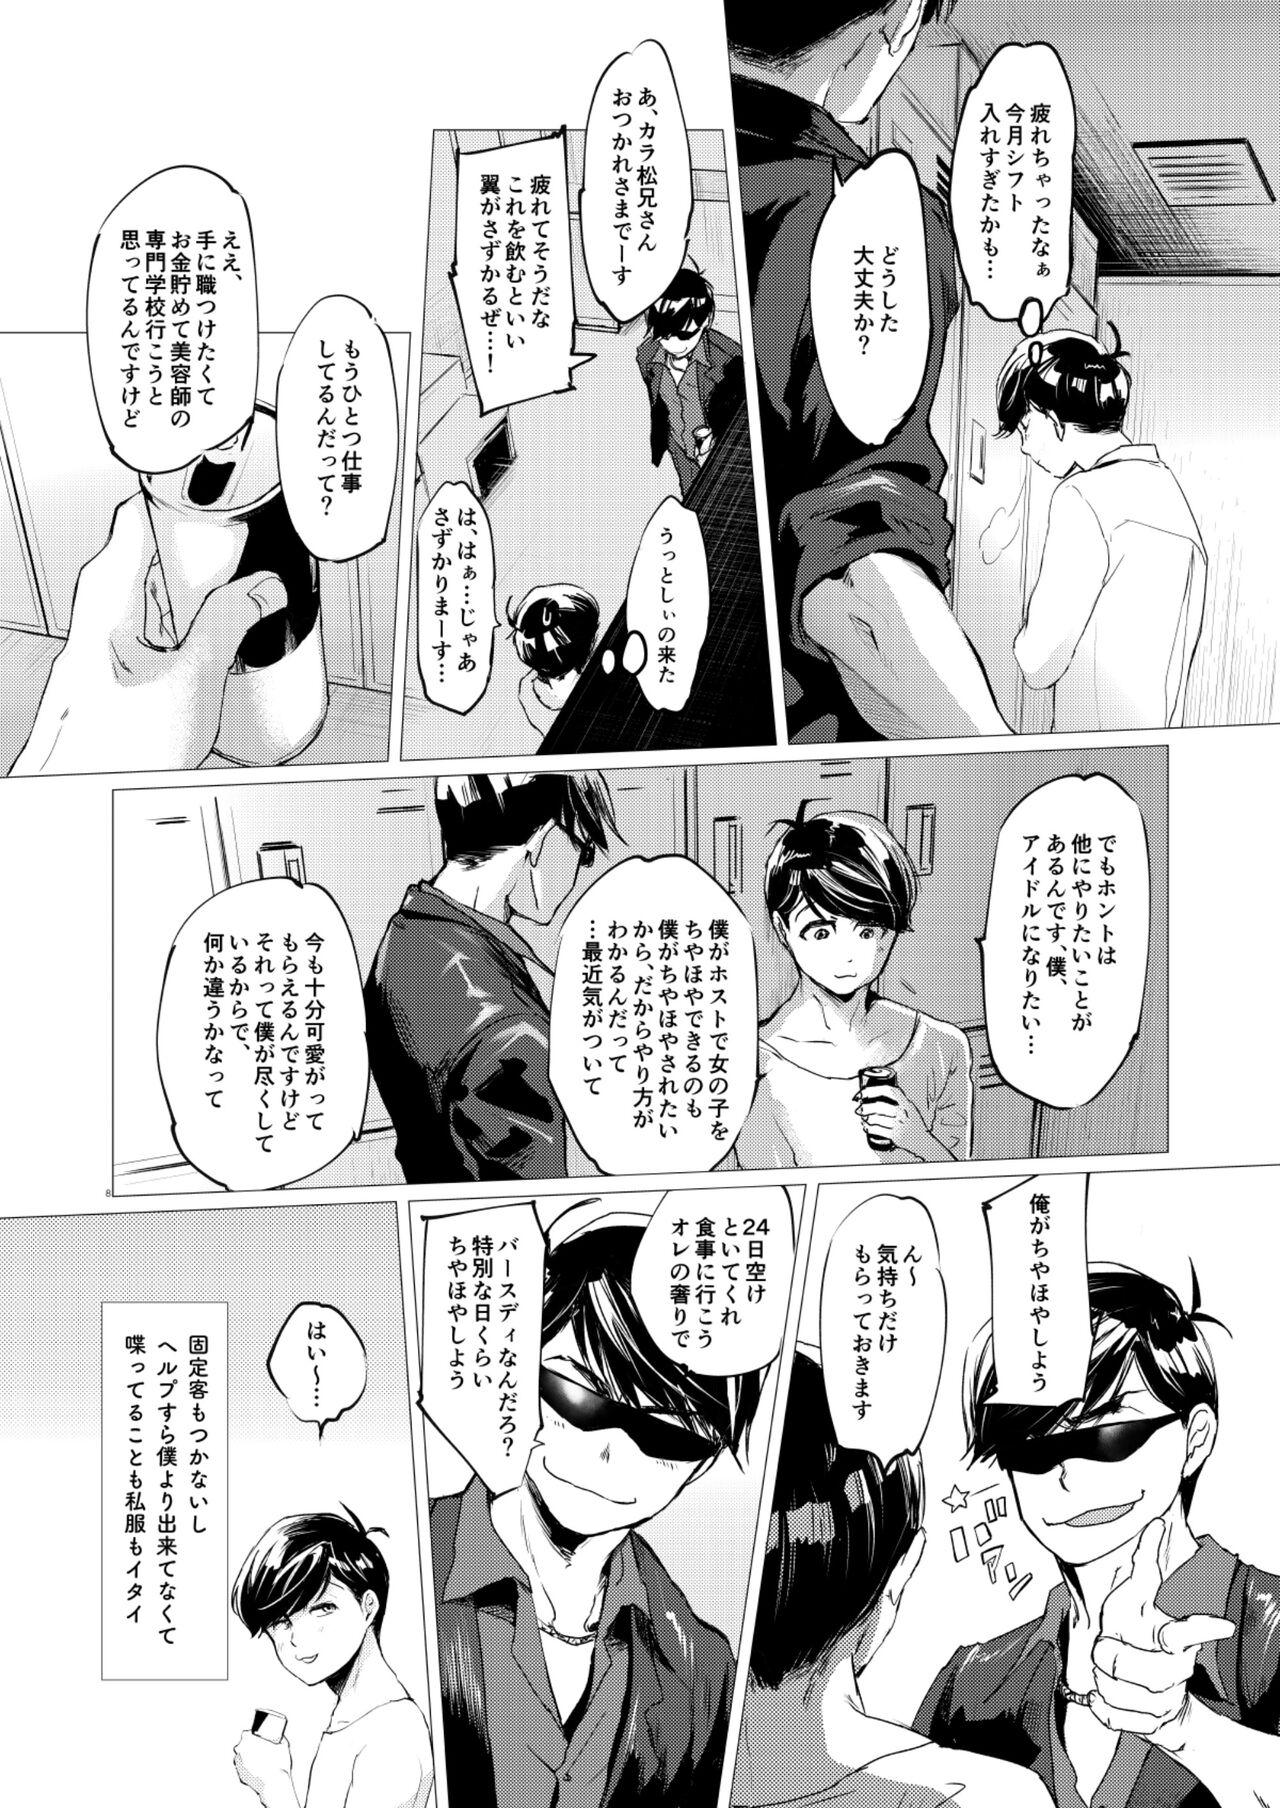 Cei Mattei Arigataya Vol. 1 Kahitsuban - Osomatsu san Massage Creep - Page 7